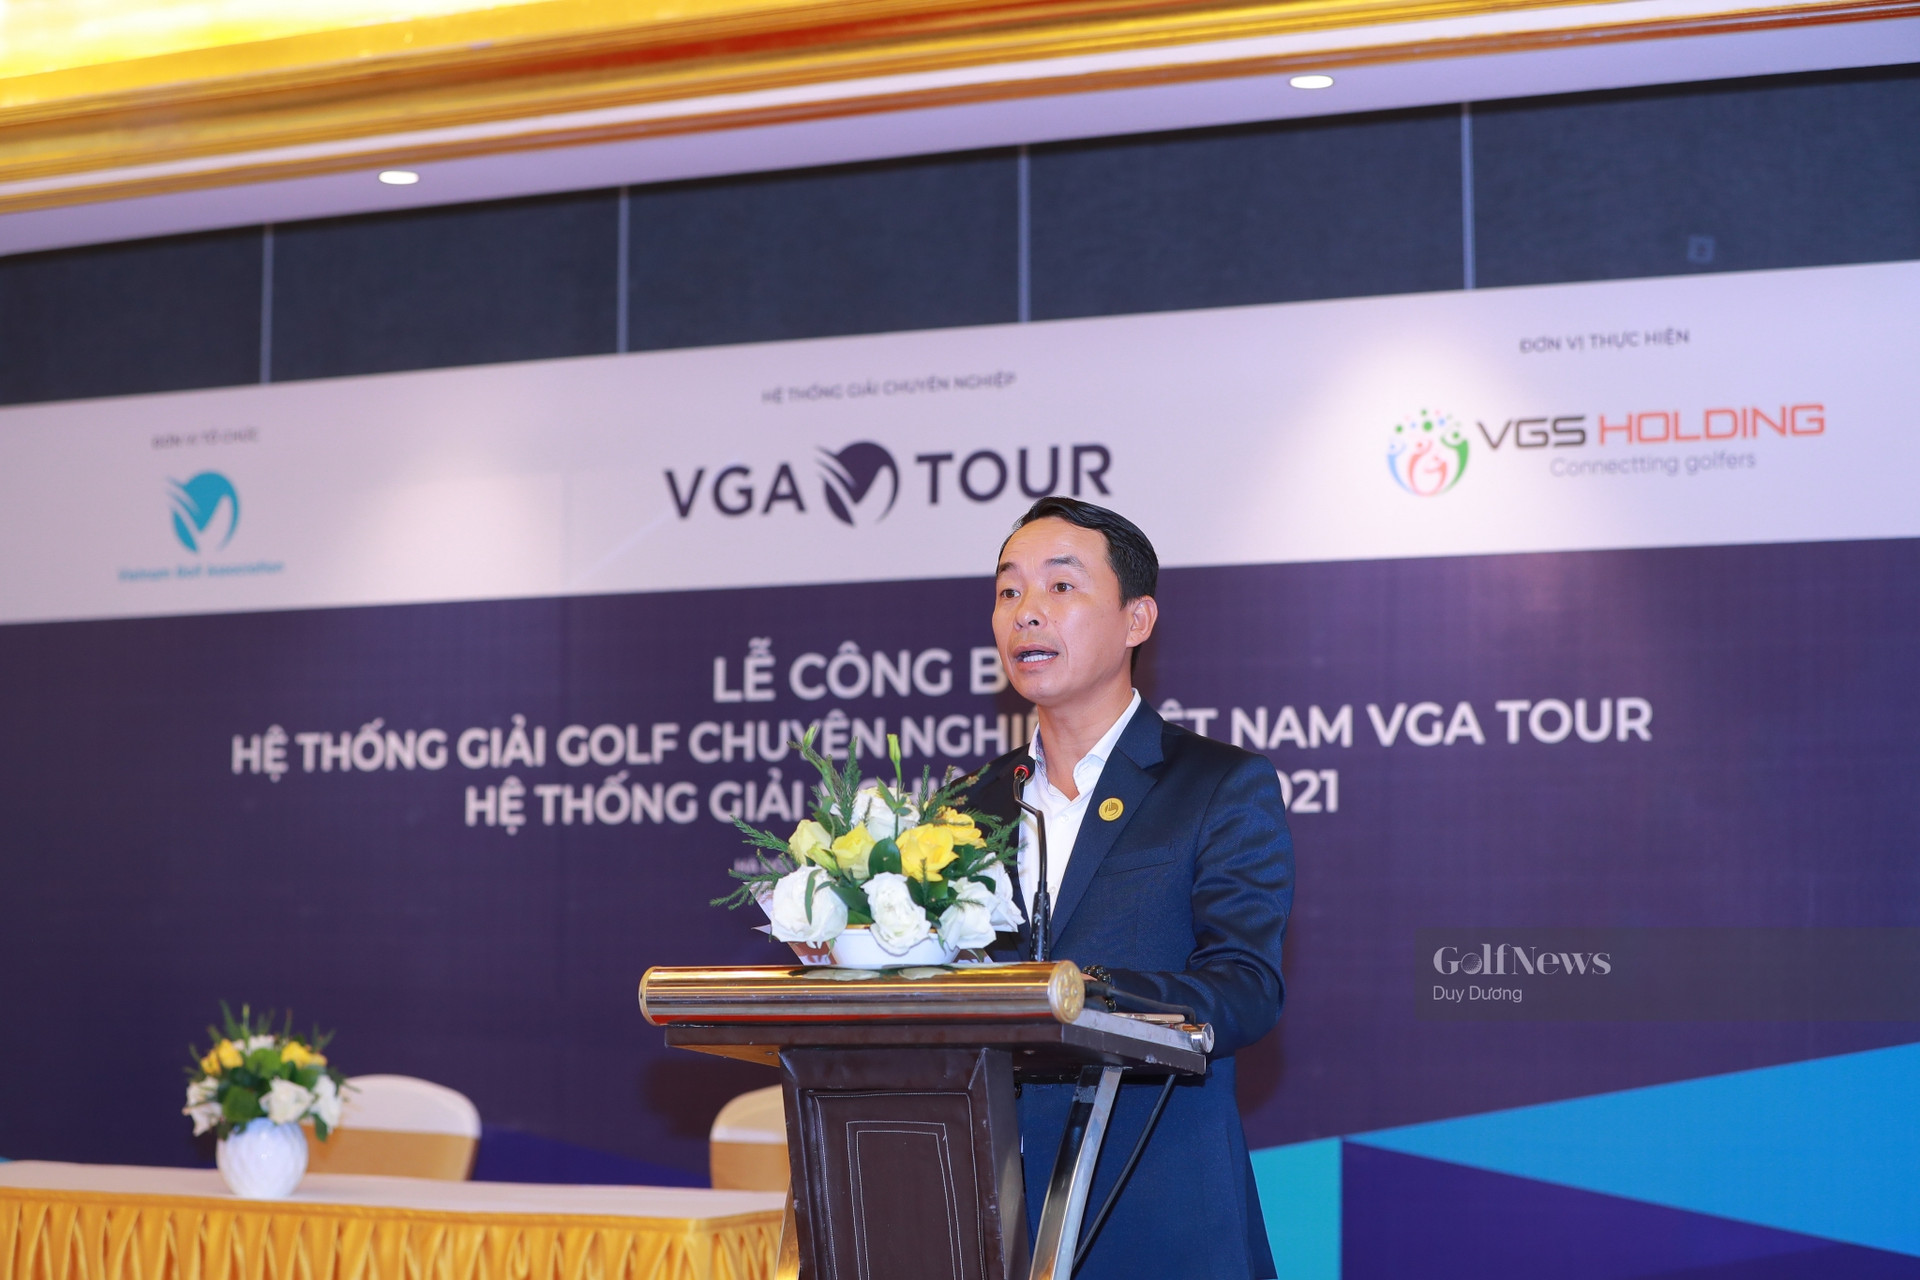 FLC Vietnam Masters 2021 presented by Bamboo Airways tự hào là giải đấu mở màn cho VGA Tour - Ảnh 1.